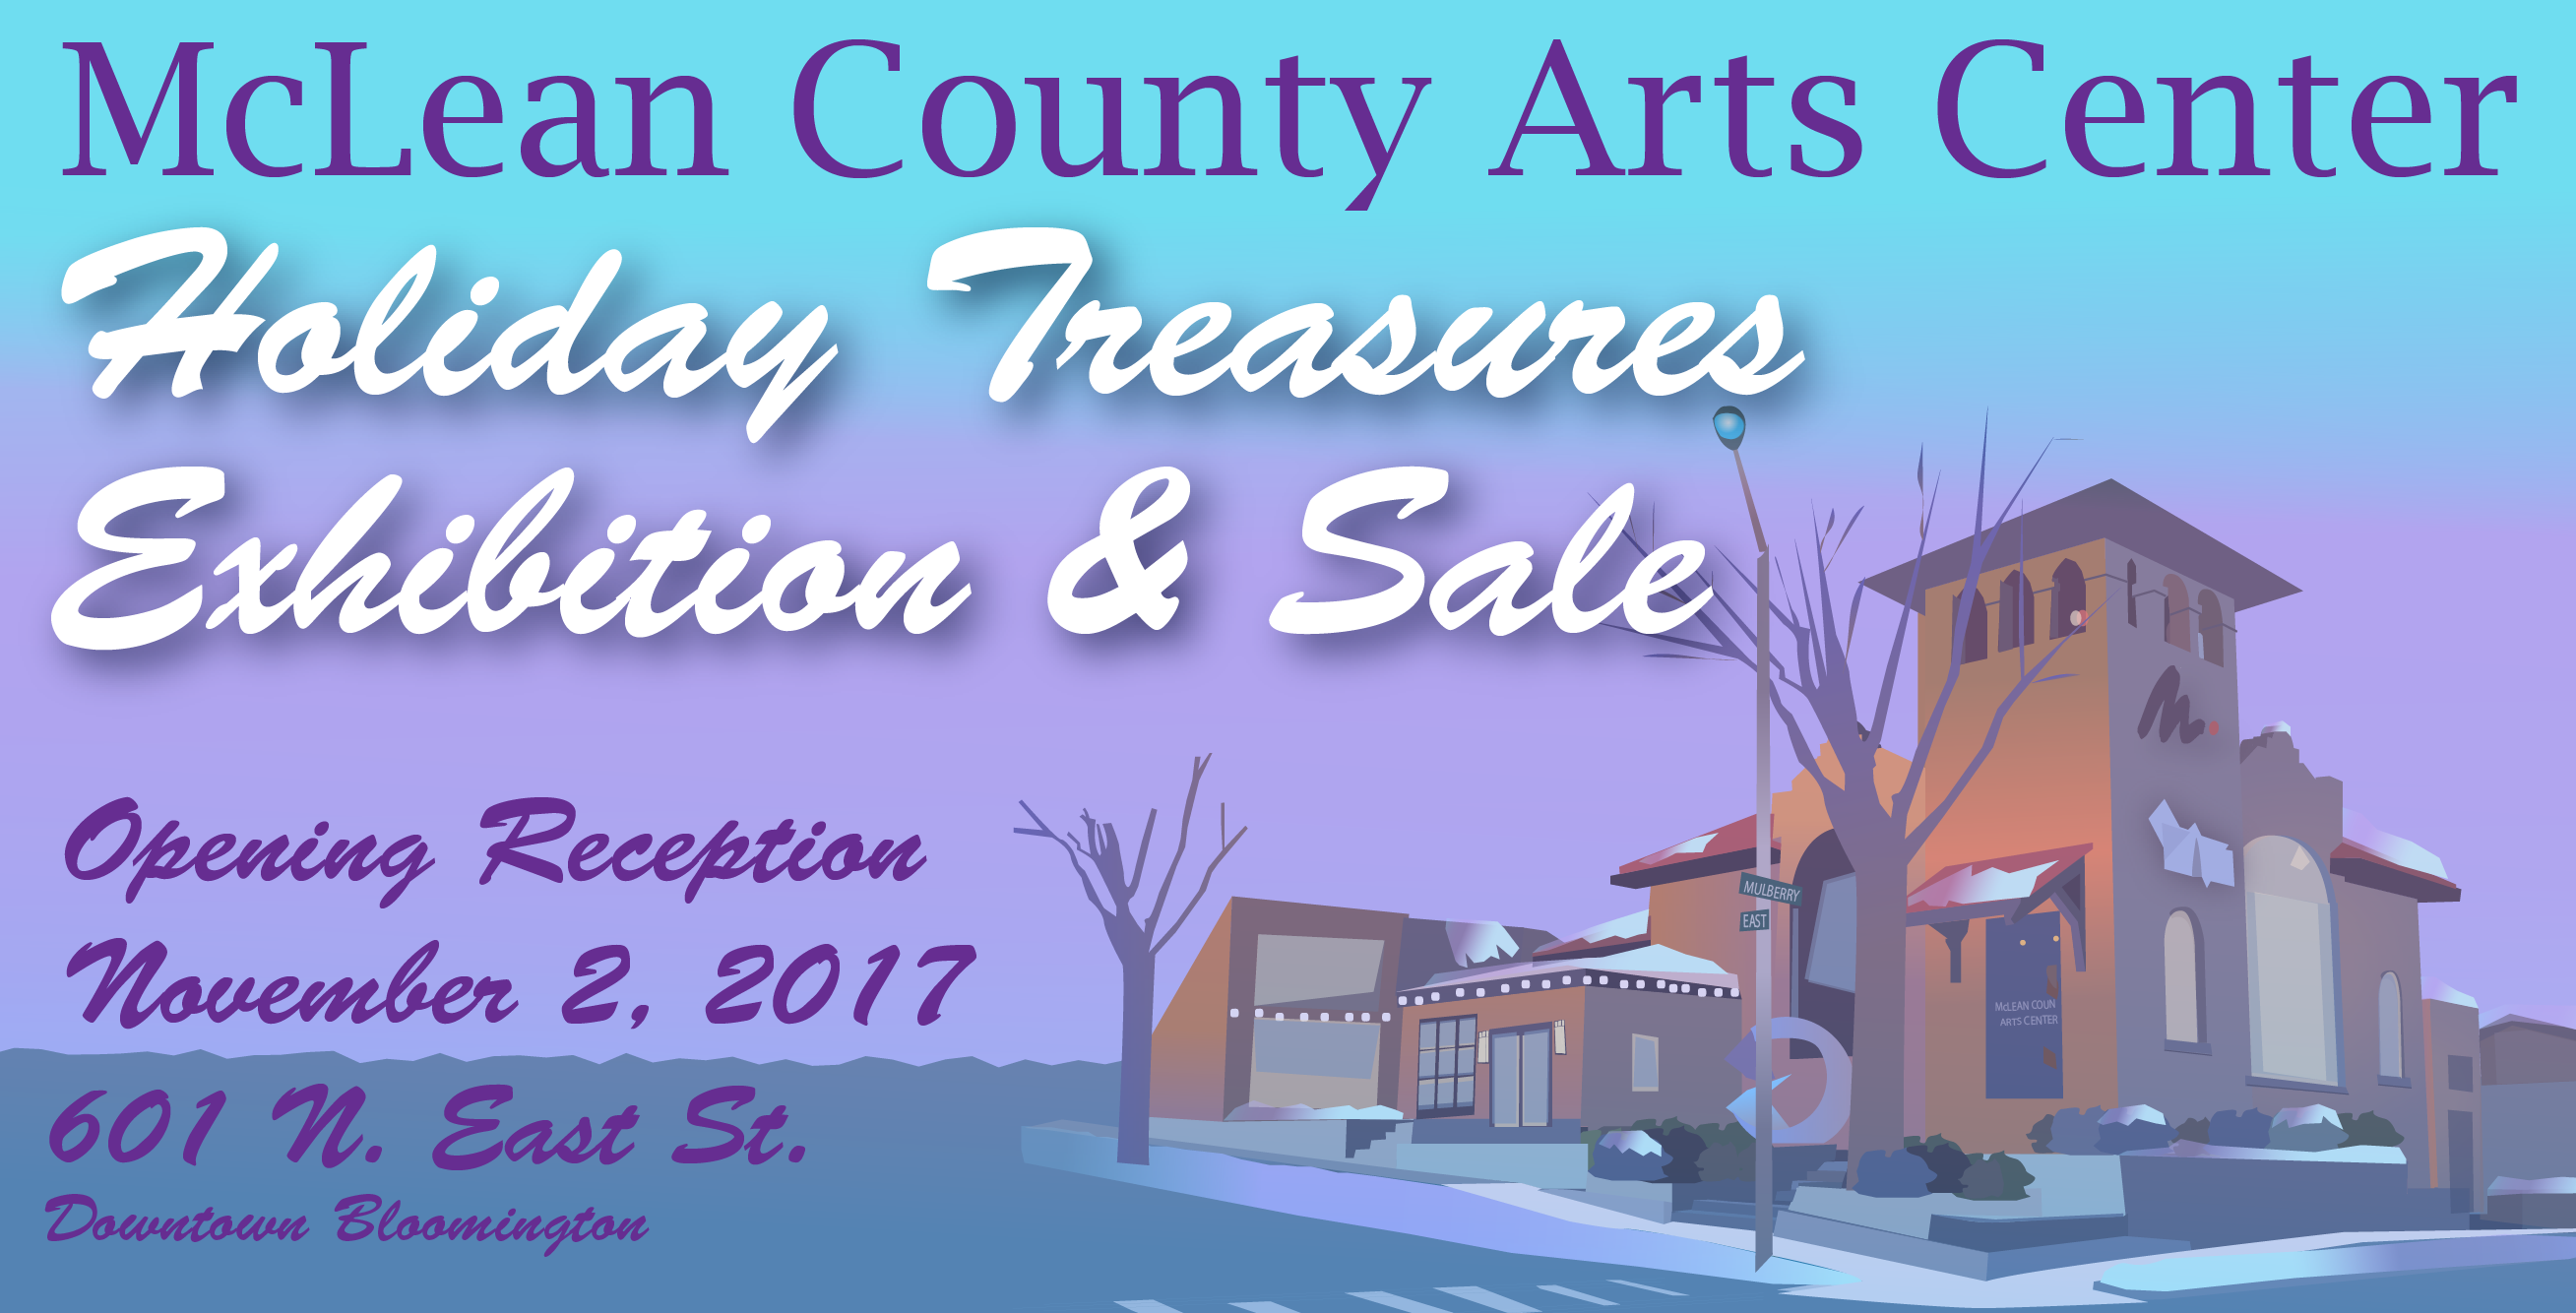 Holiday Treasures Exhibition & Sale